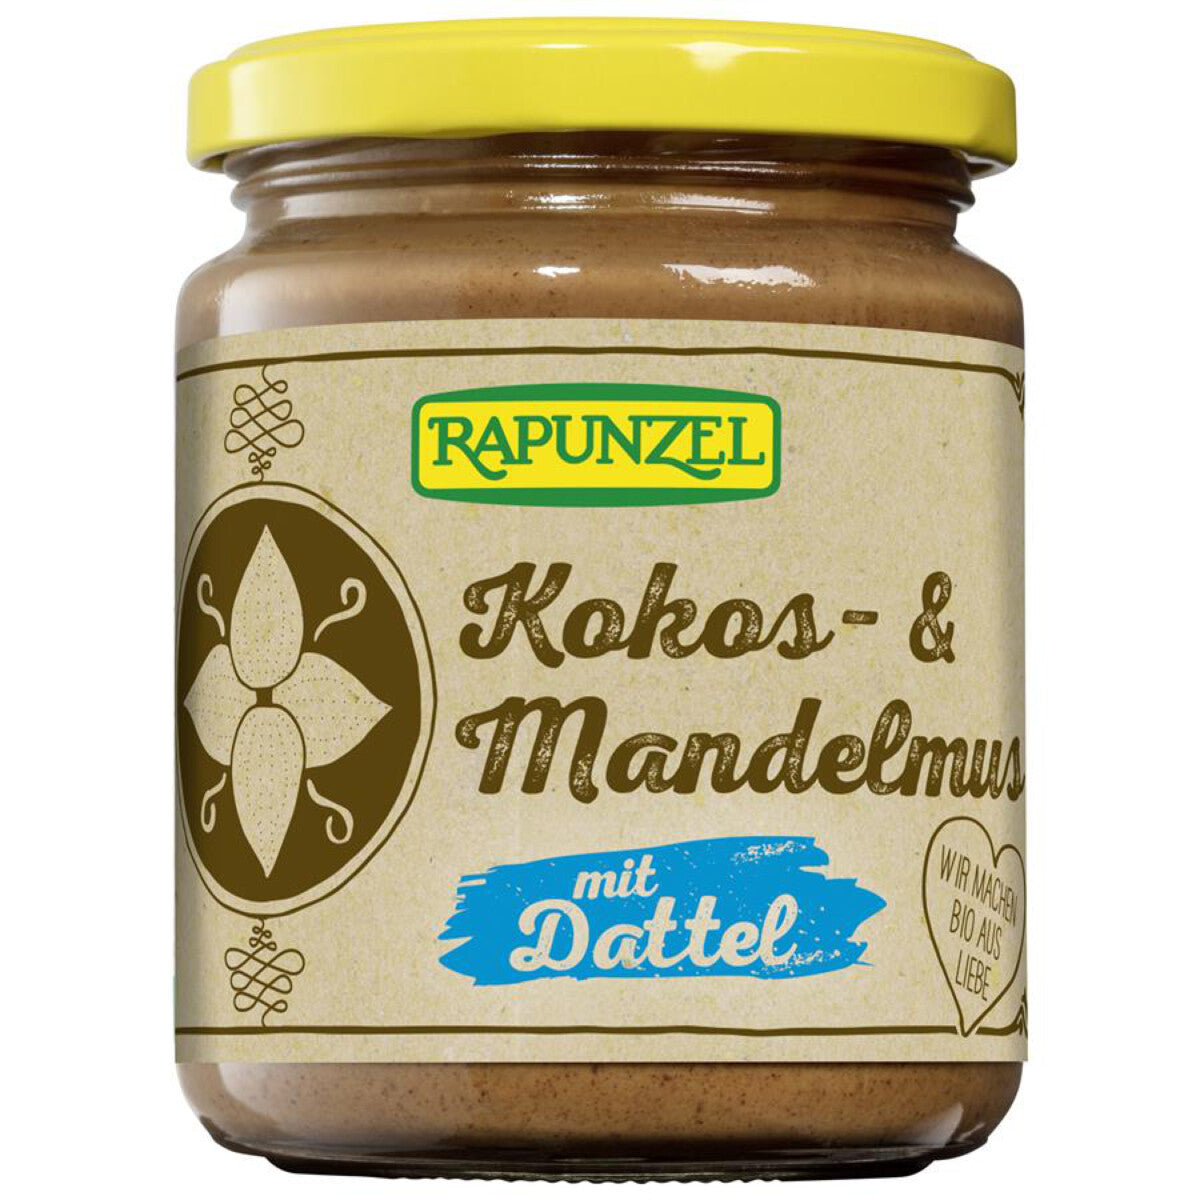  RAPUNZEL Kokos- & Mandelmus mit Dattel - 250 g